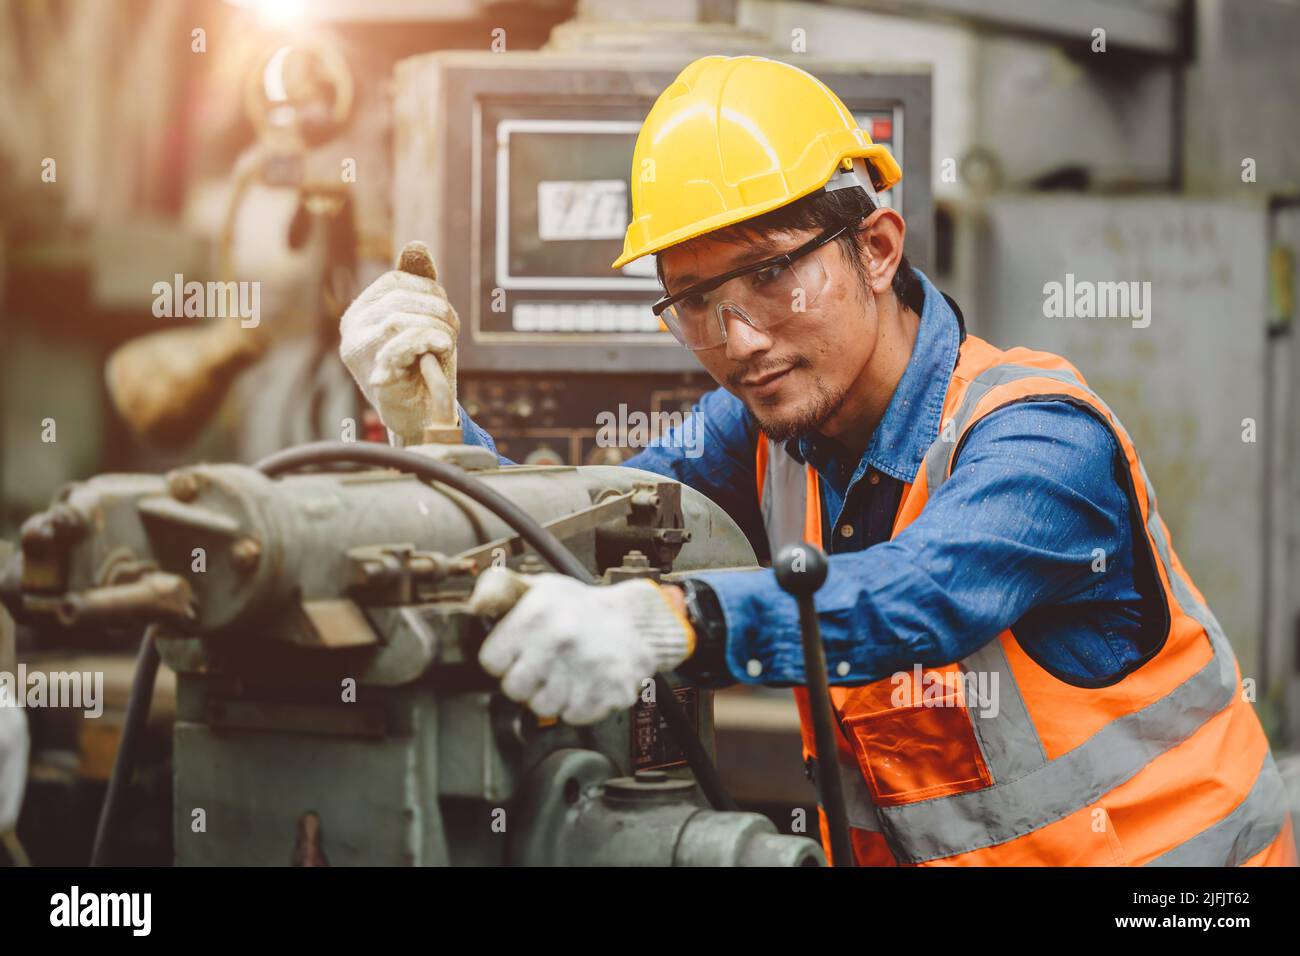 Travailleur de l'aciérie homme asiatique travaille dans une machine industrielle lourde avec l'uniforme d'ingénieur de sécurité. Banque D'Images